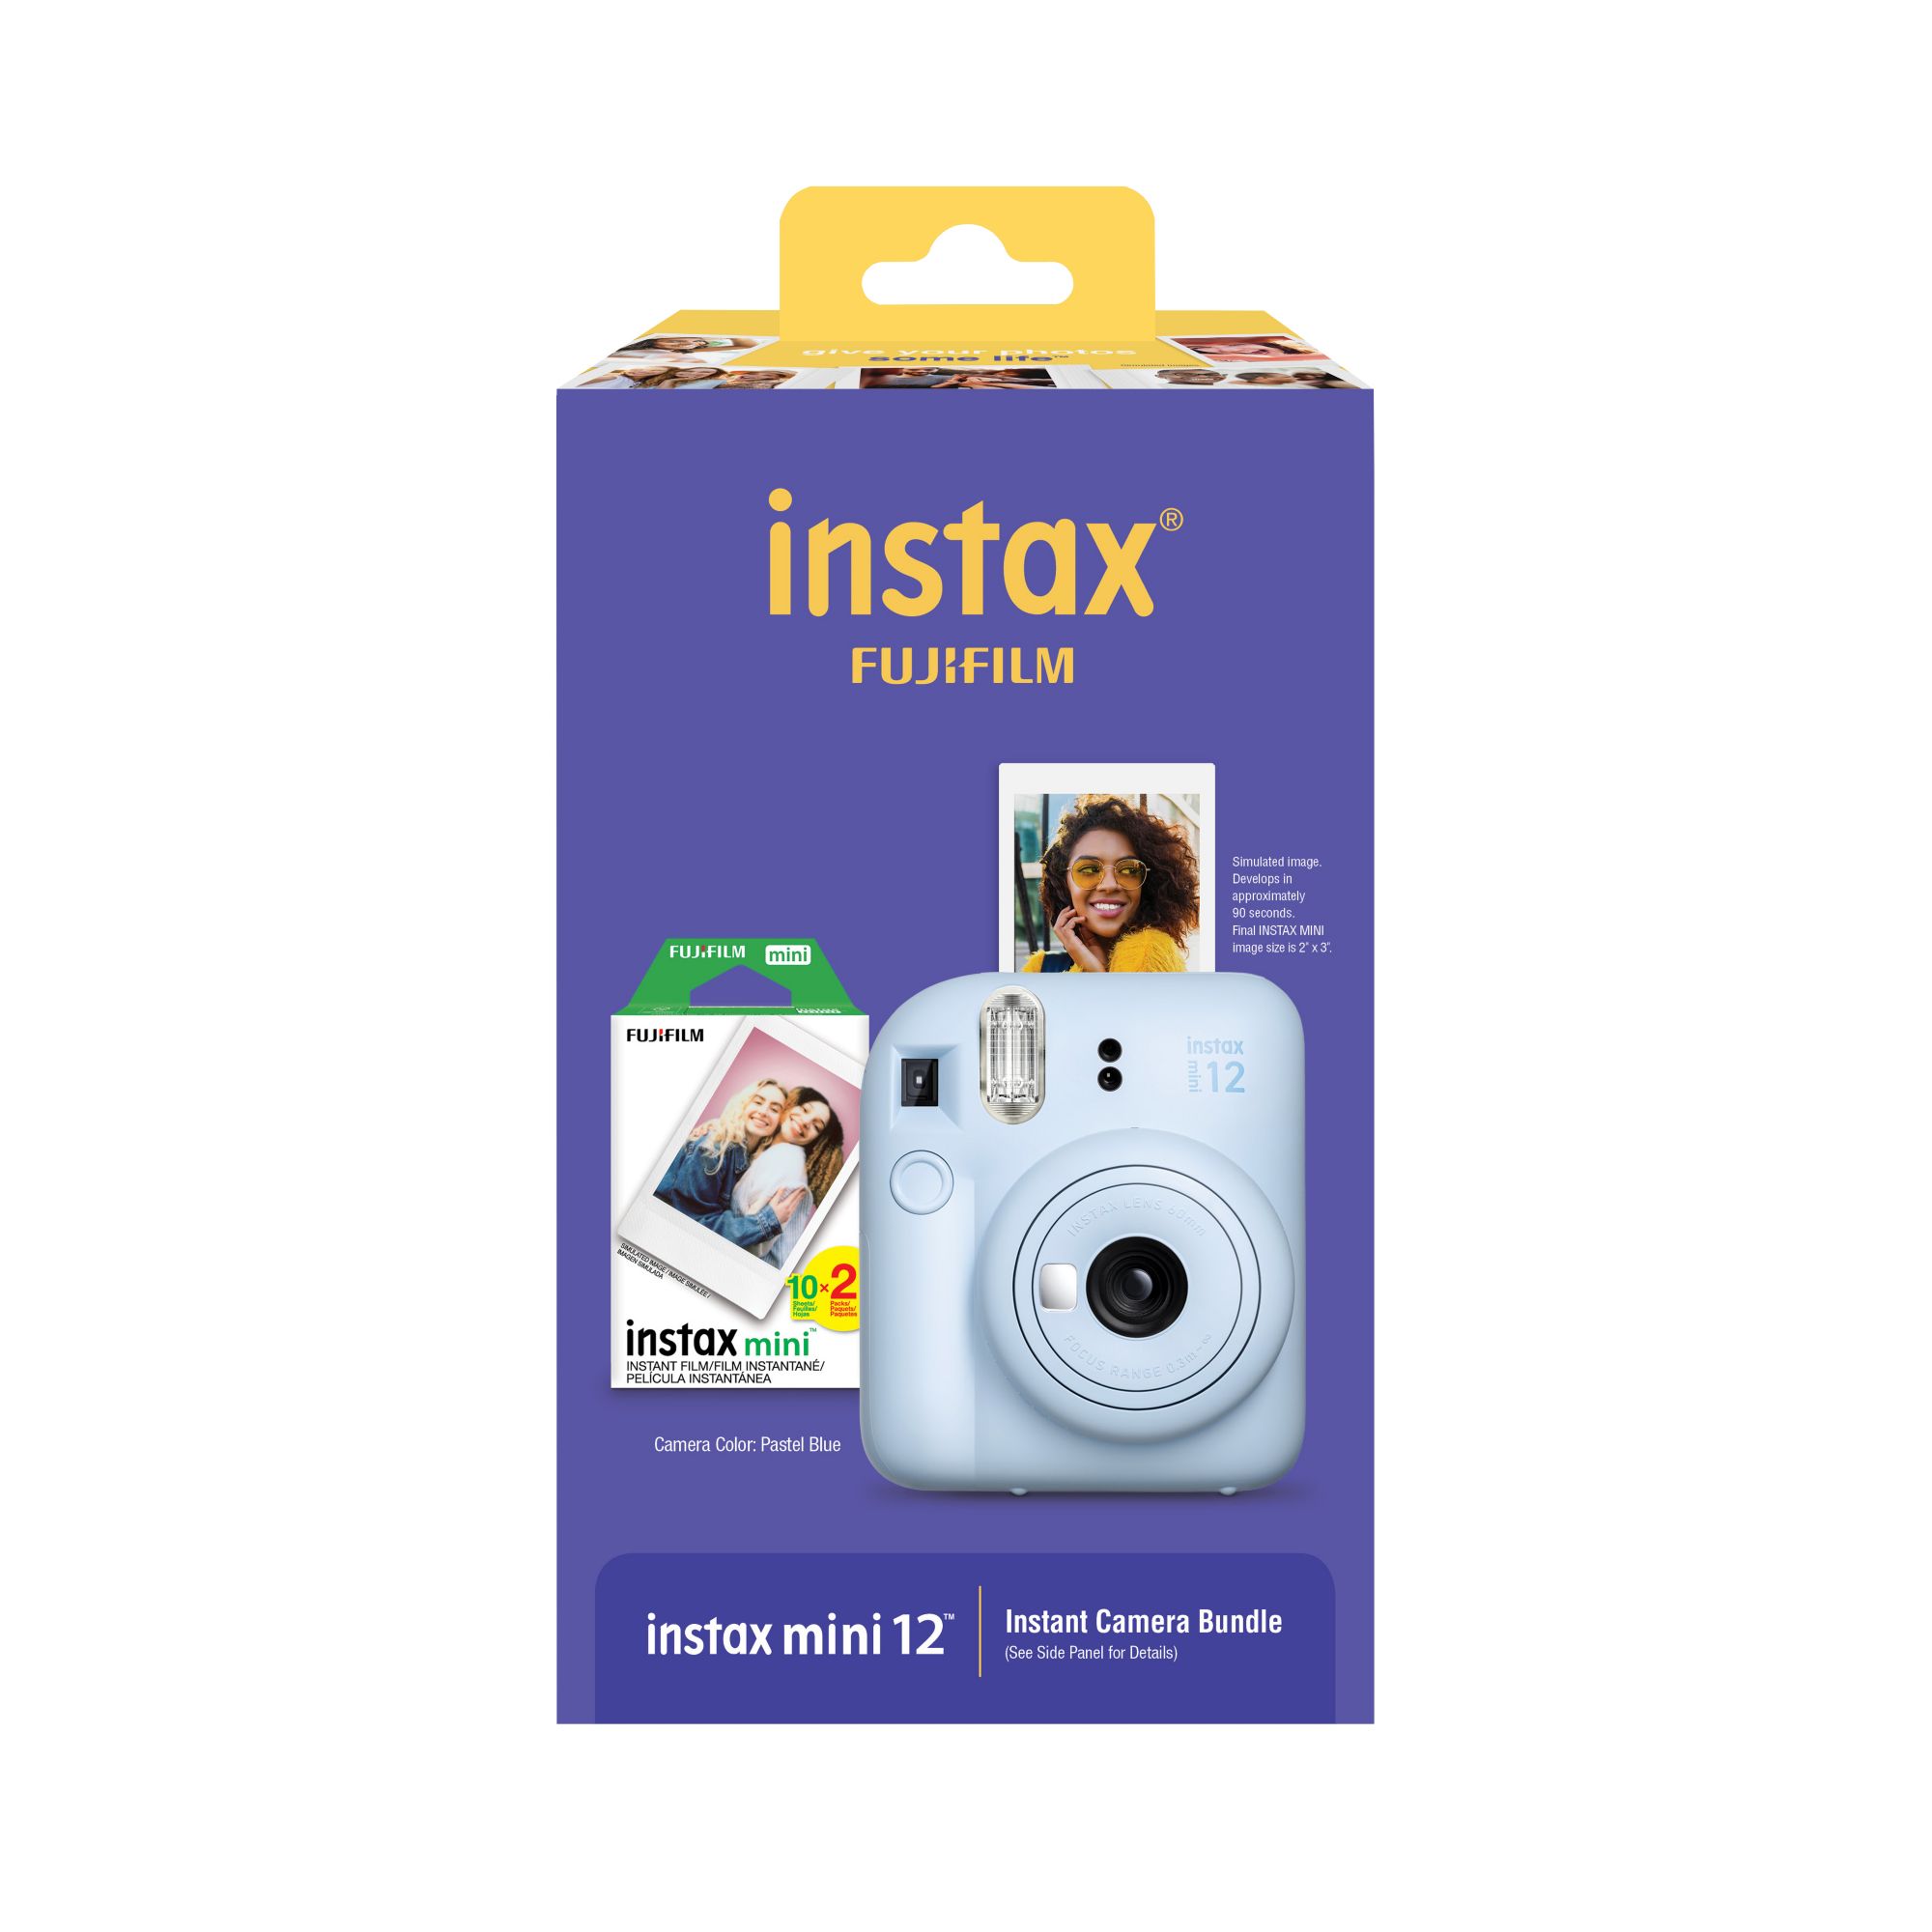 Fujifilm Instax Mini Film 10x2 pack